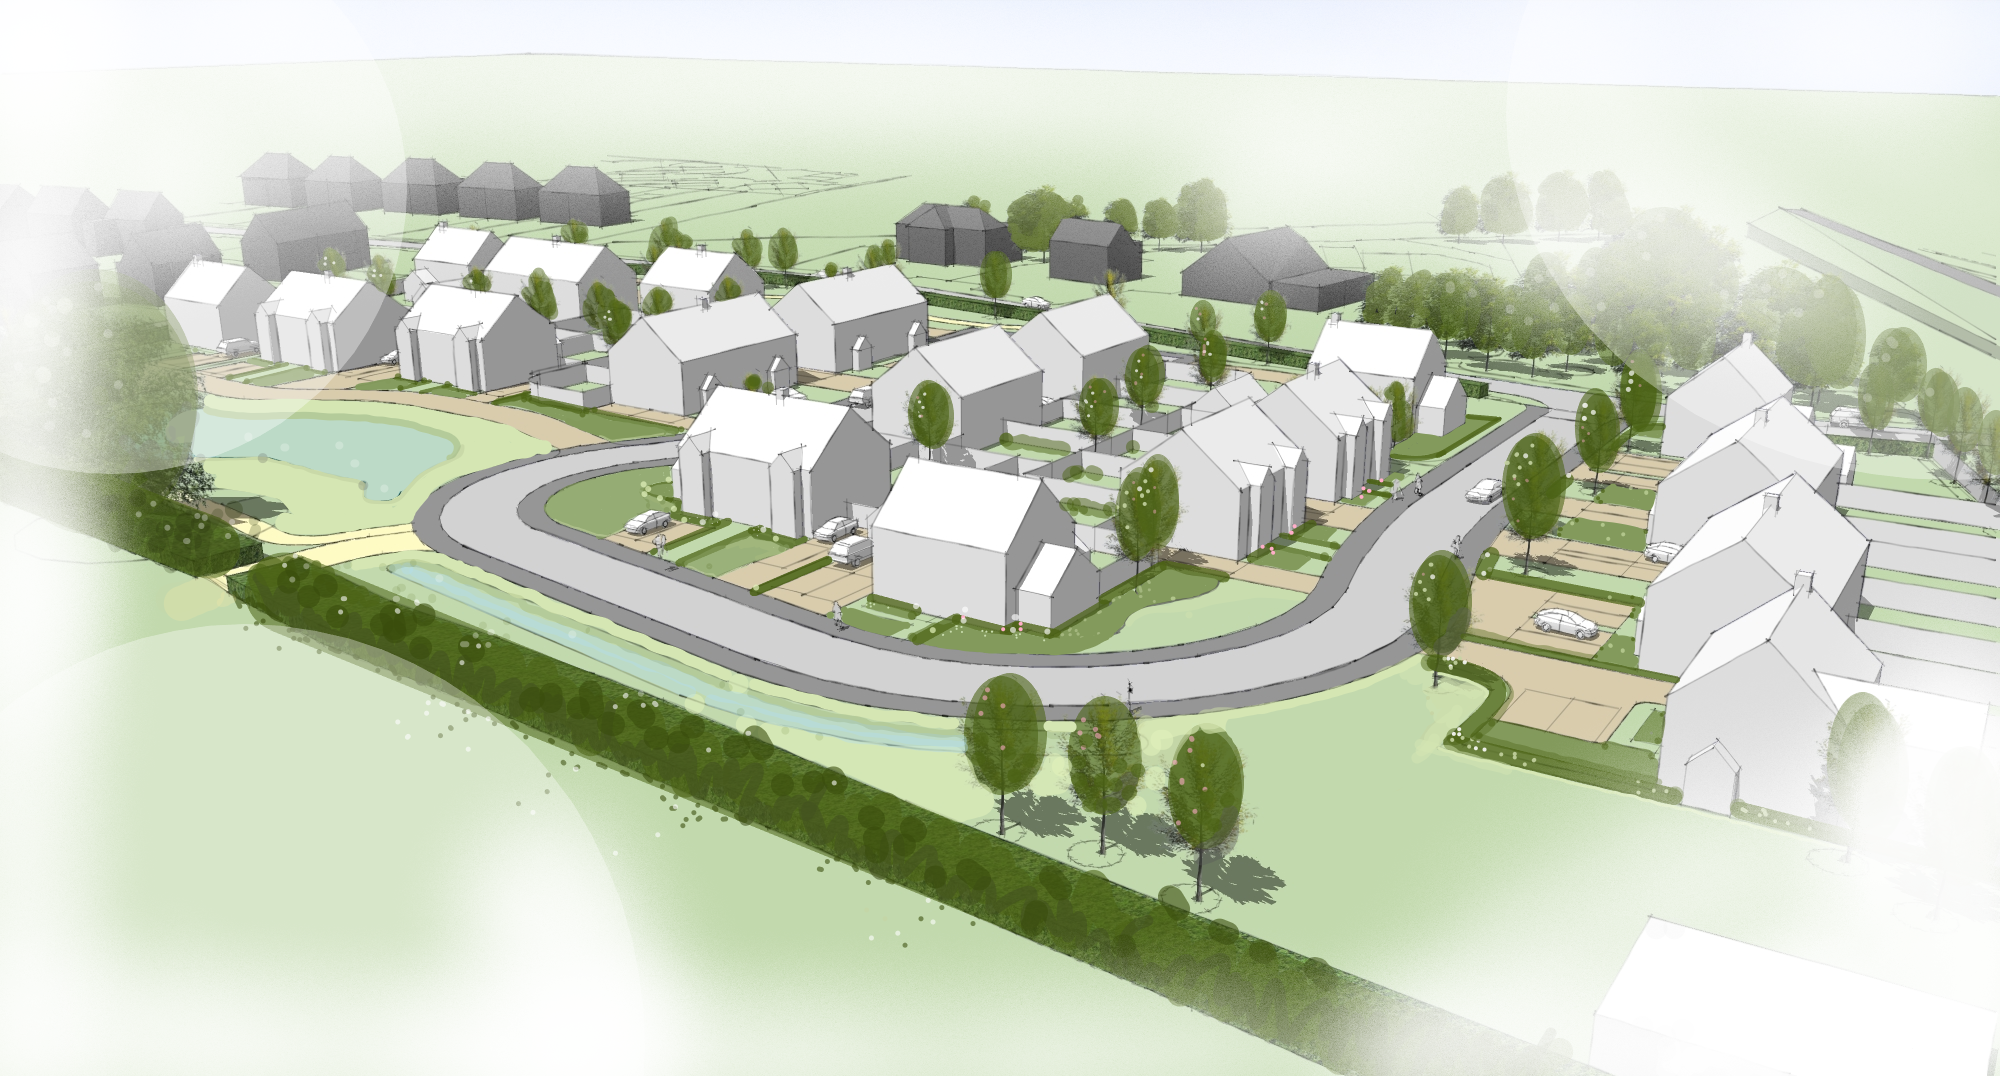 Plans for 40 new homes in Honeybourne near Evesham